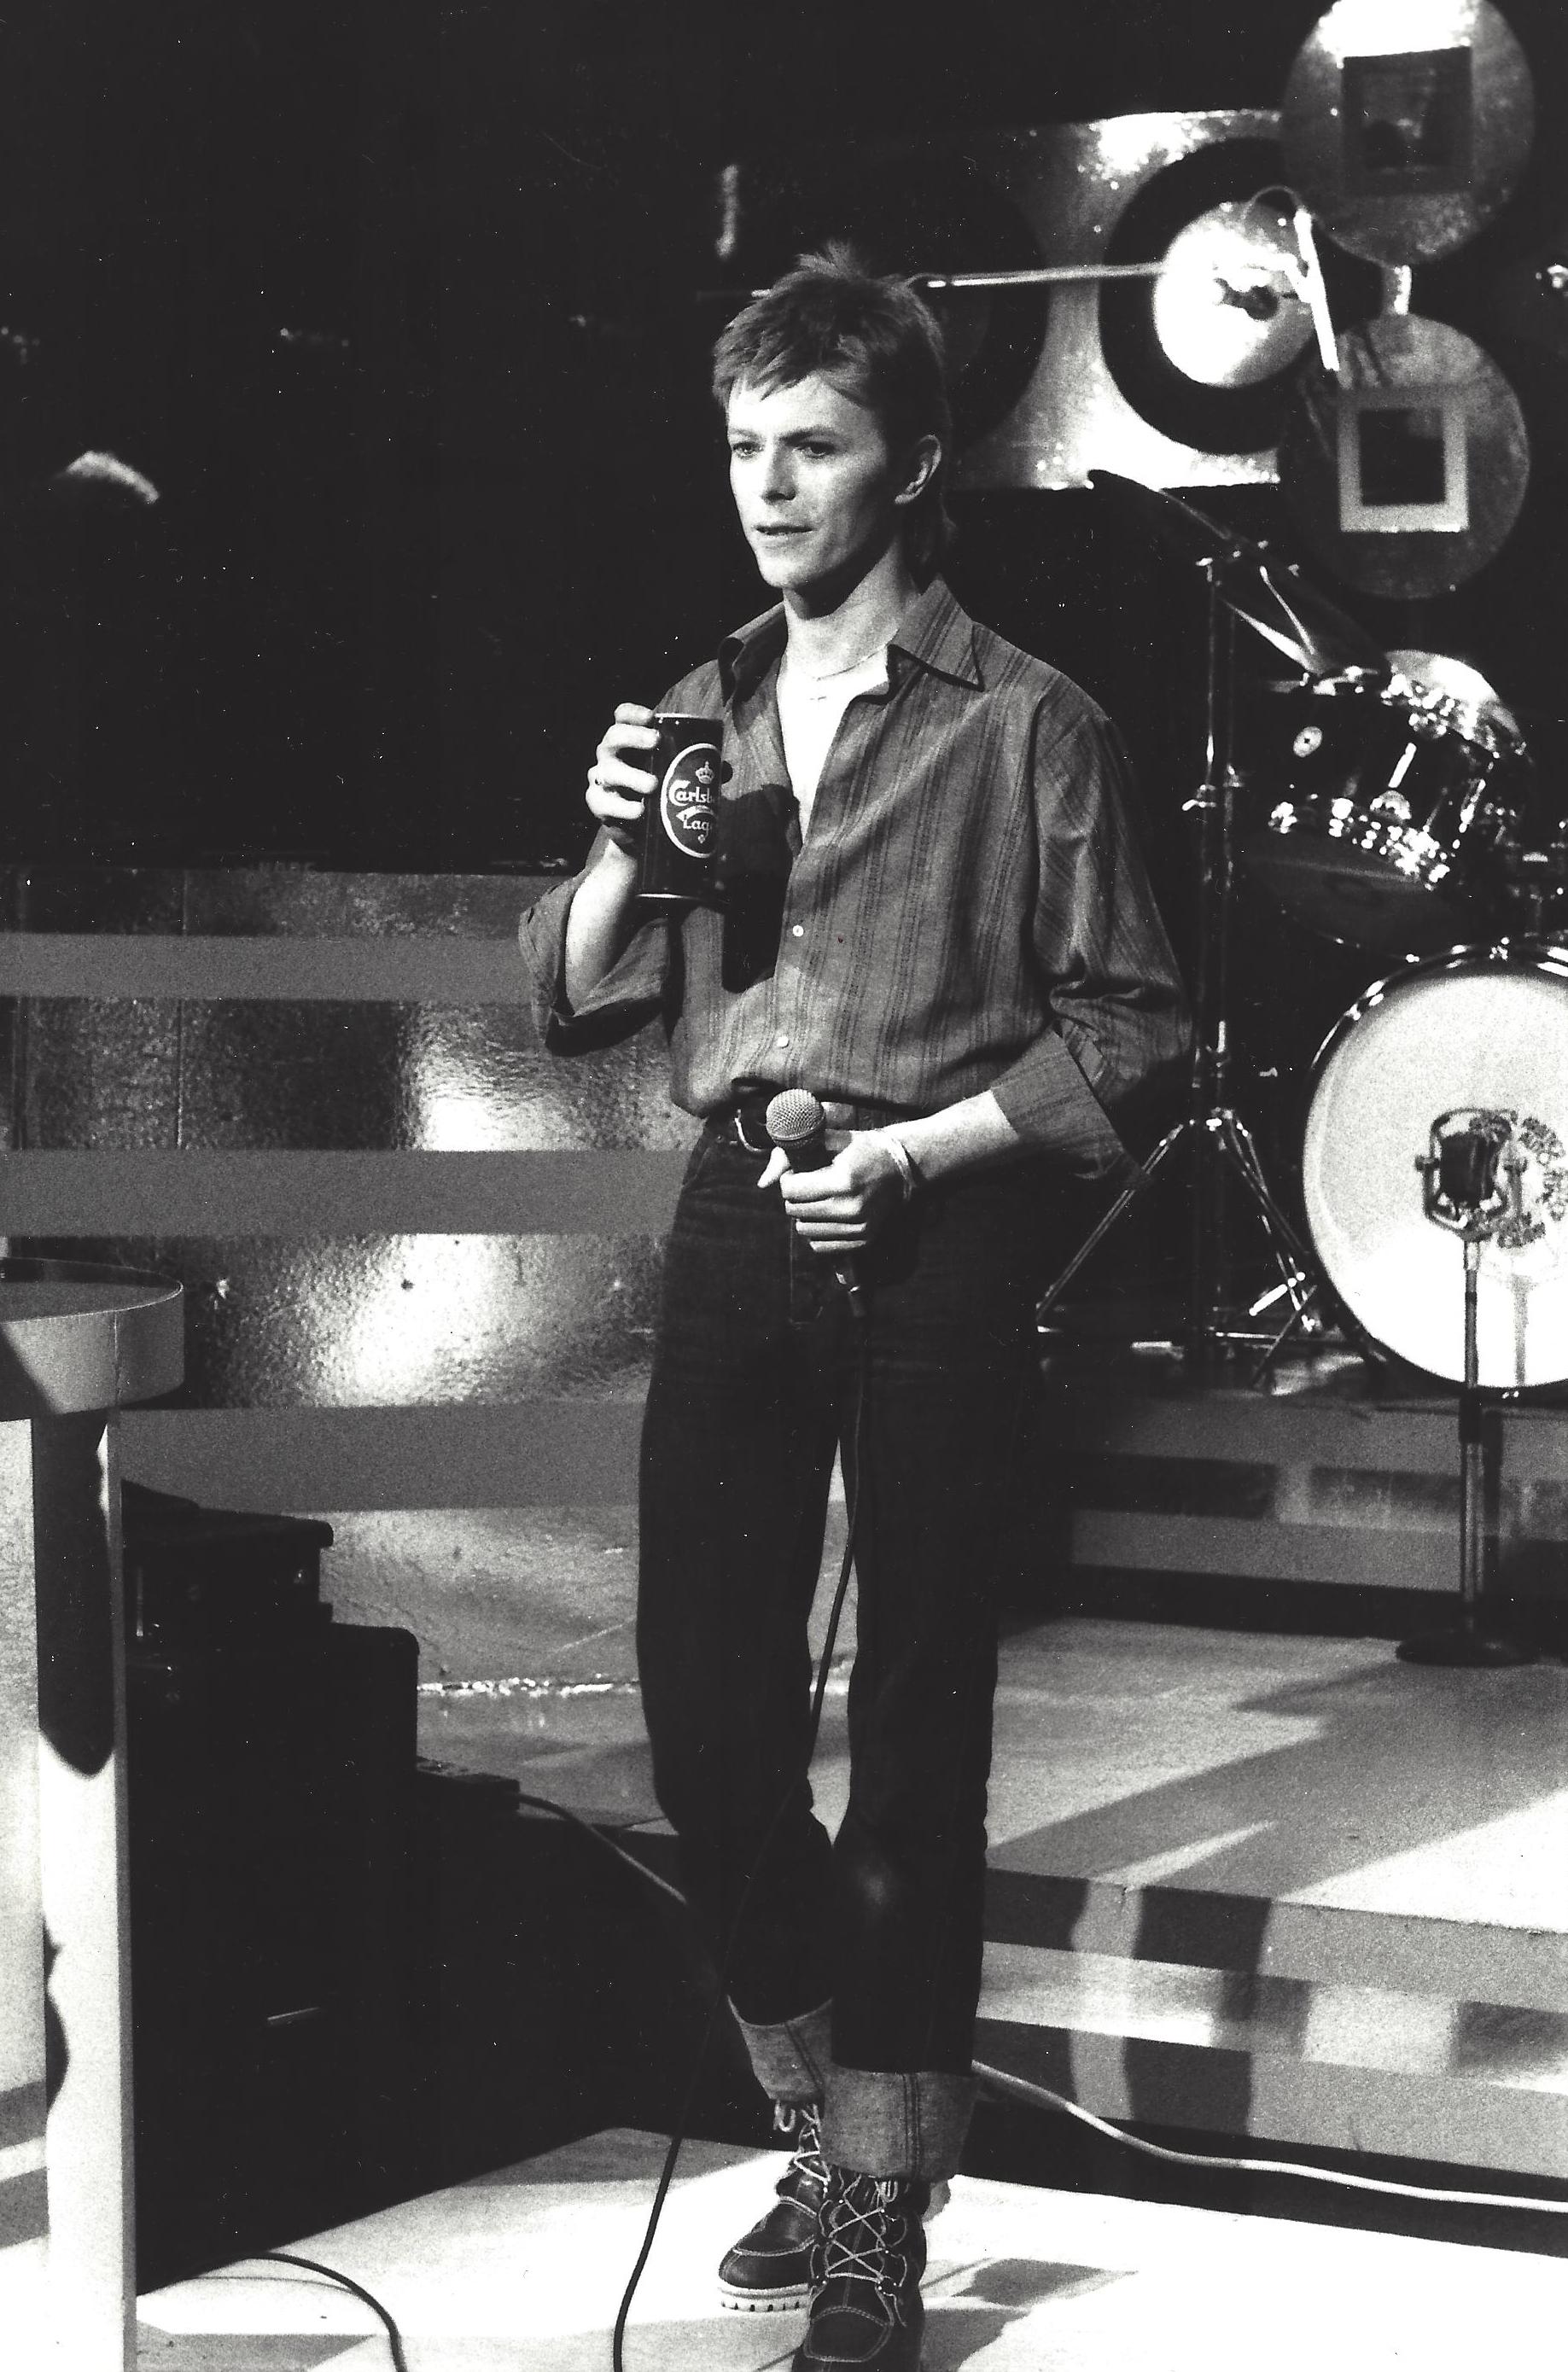 Kevin Mazur Portrait Photograph - Young David Bowie on Stage Vintage Original Photograph